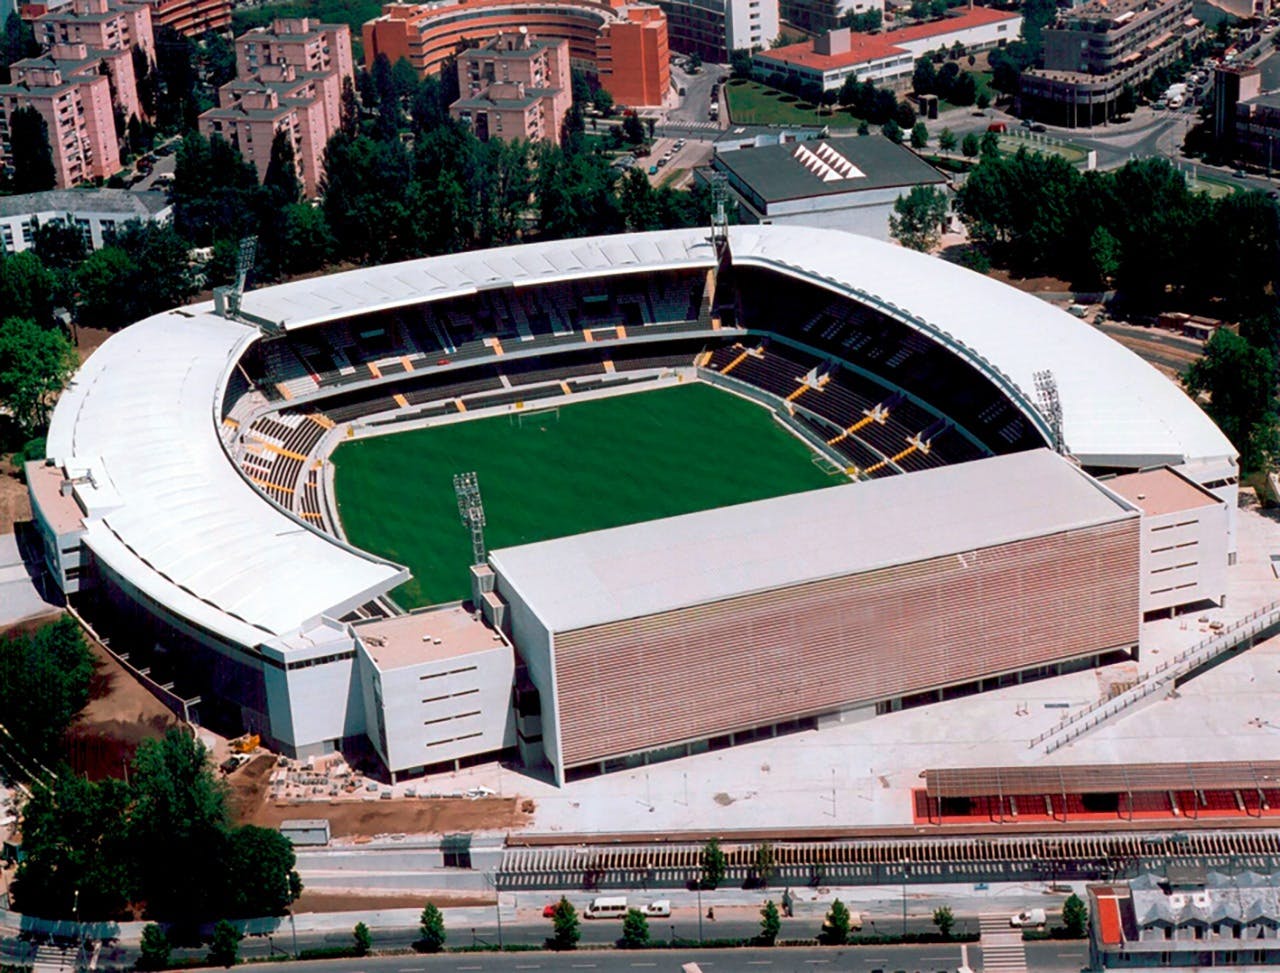 Estádio D. Afonso Henriques